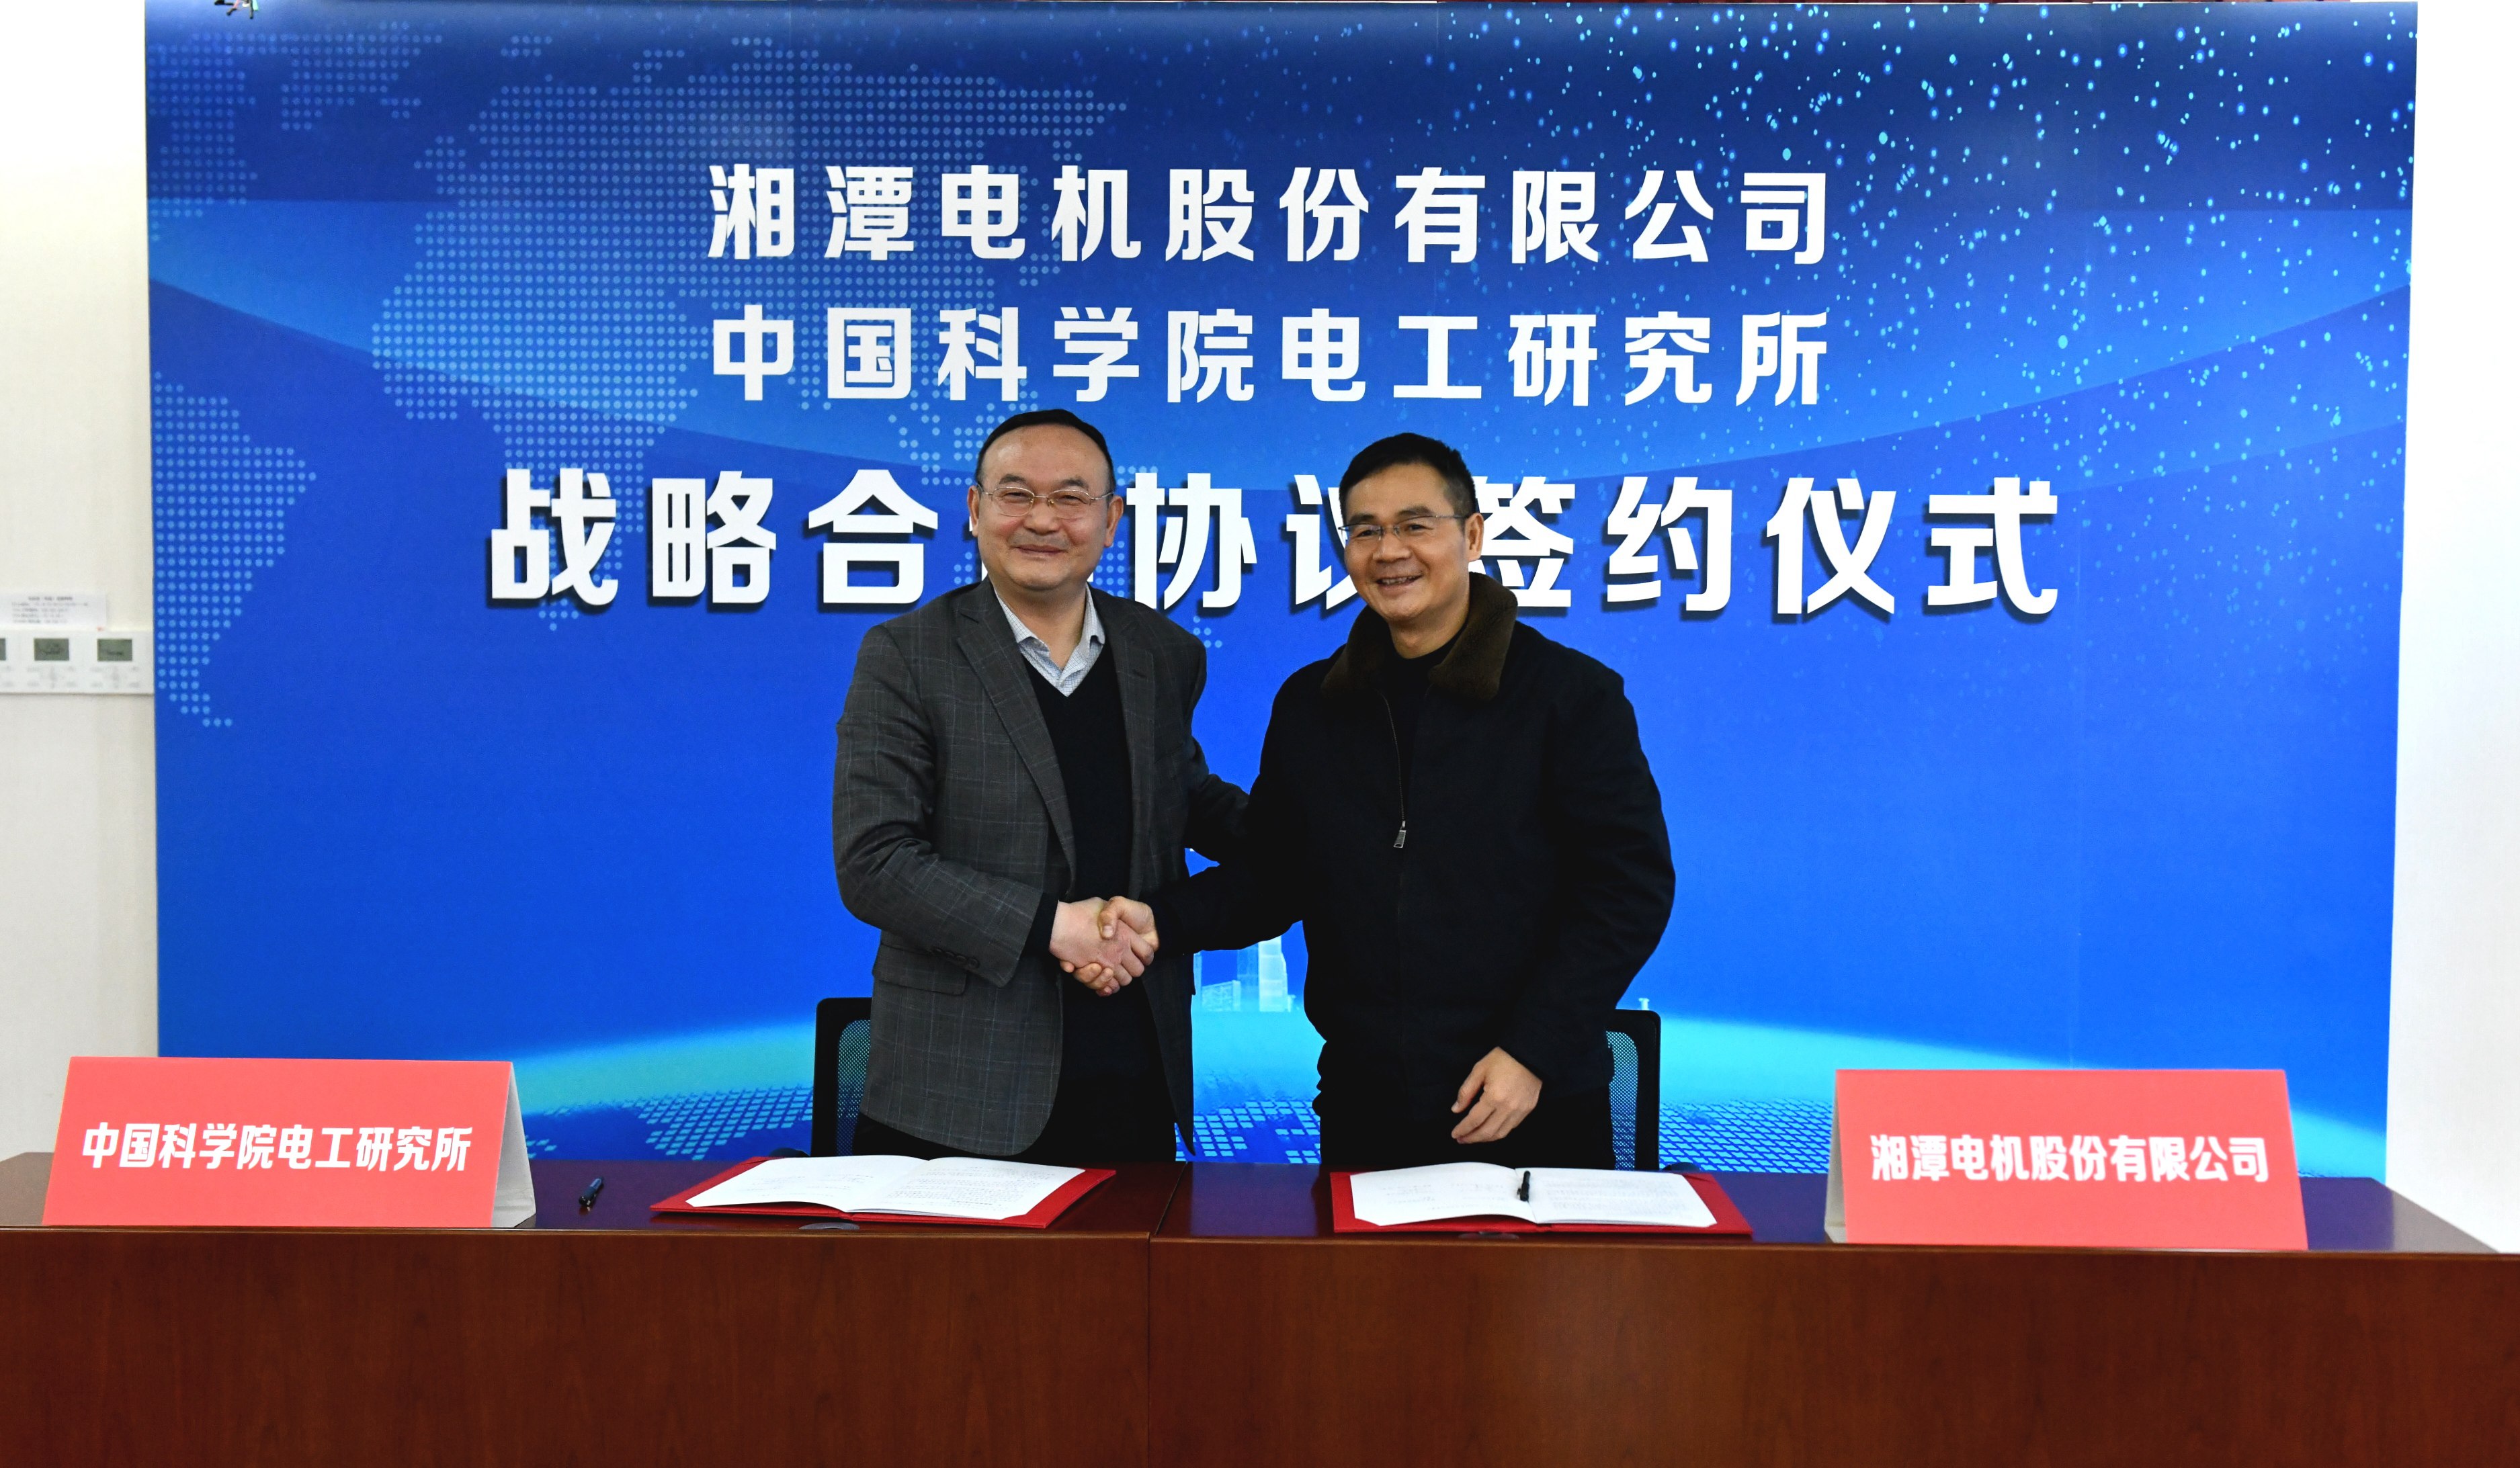 电工研究所与湘潭电机股份有限公司举行战略合作签约仪式